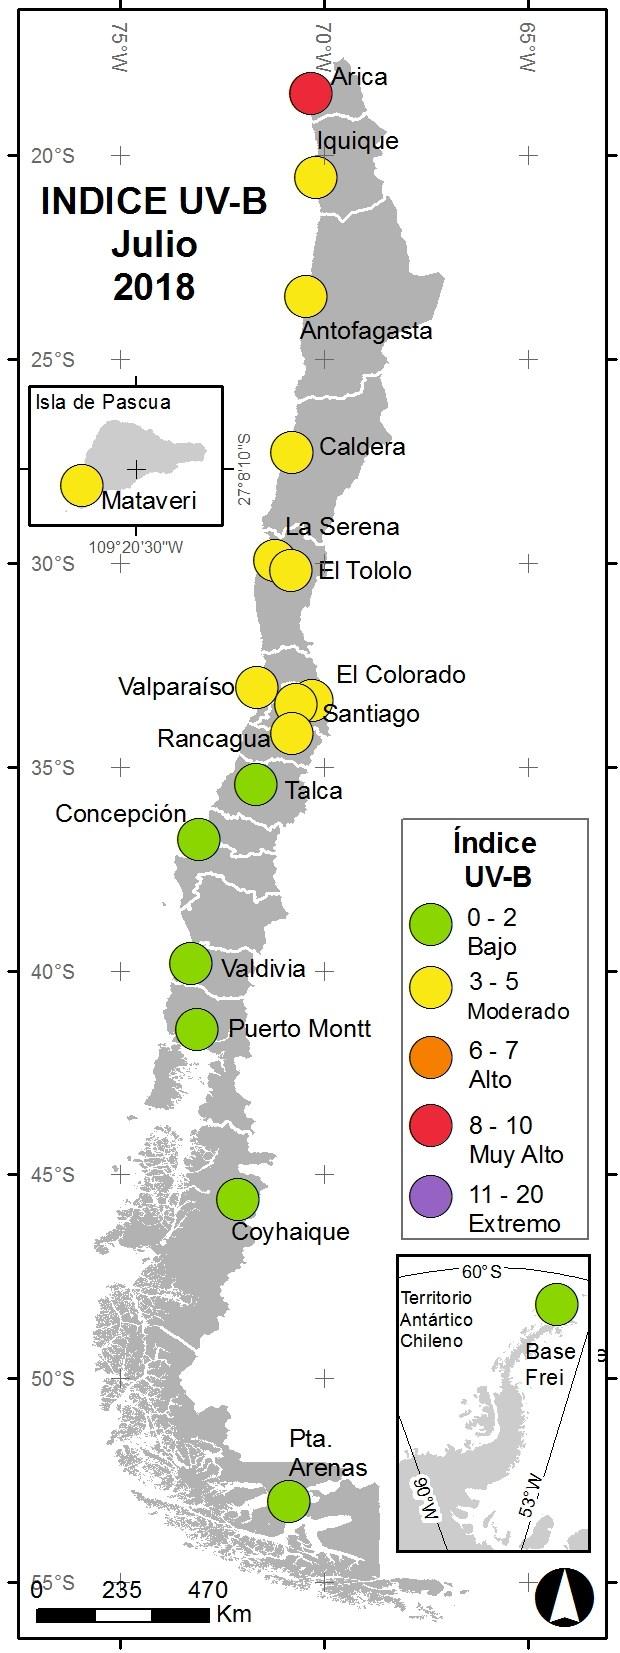 Además desde Talca al sur, incluida la estación de Eduardo Frei en la Península Antártica, los valores de Índice UV no superaron un promedio 2 de IUV (rango Bajo).